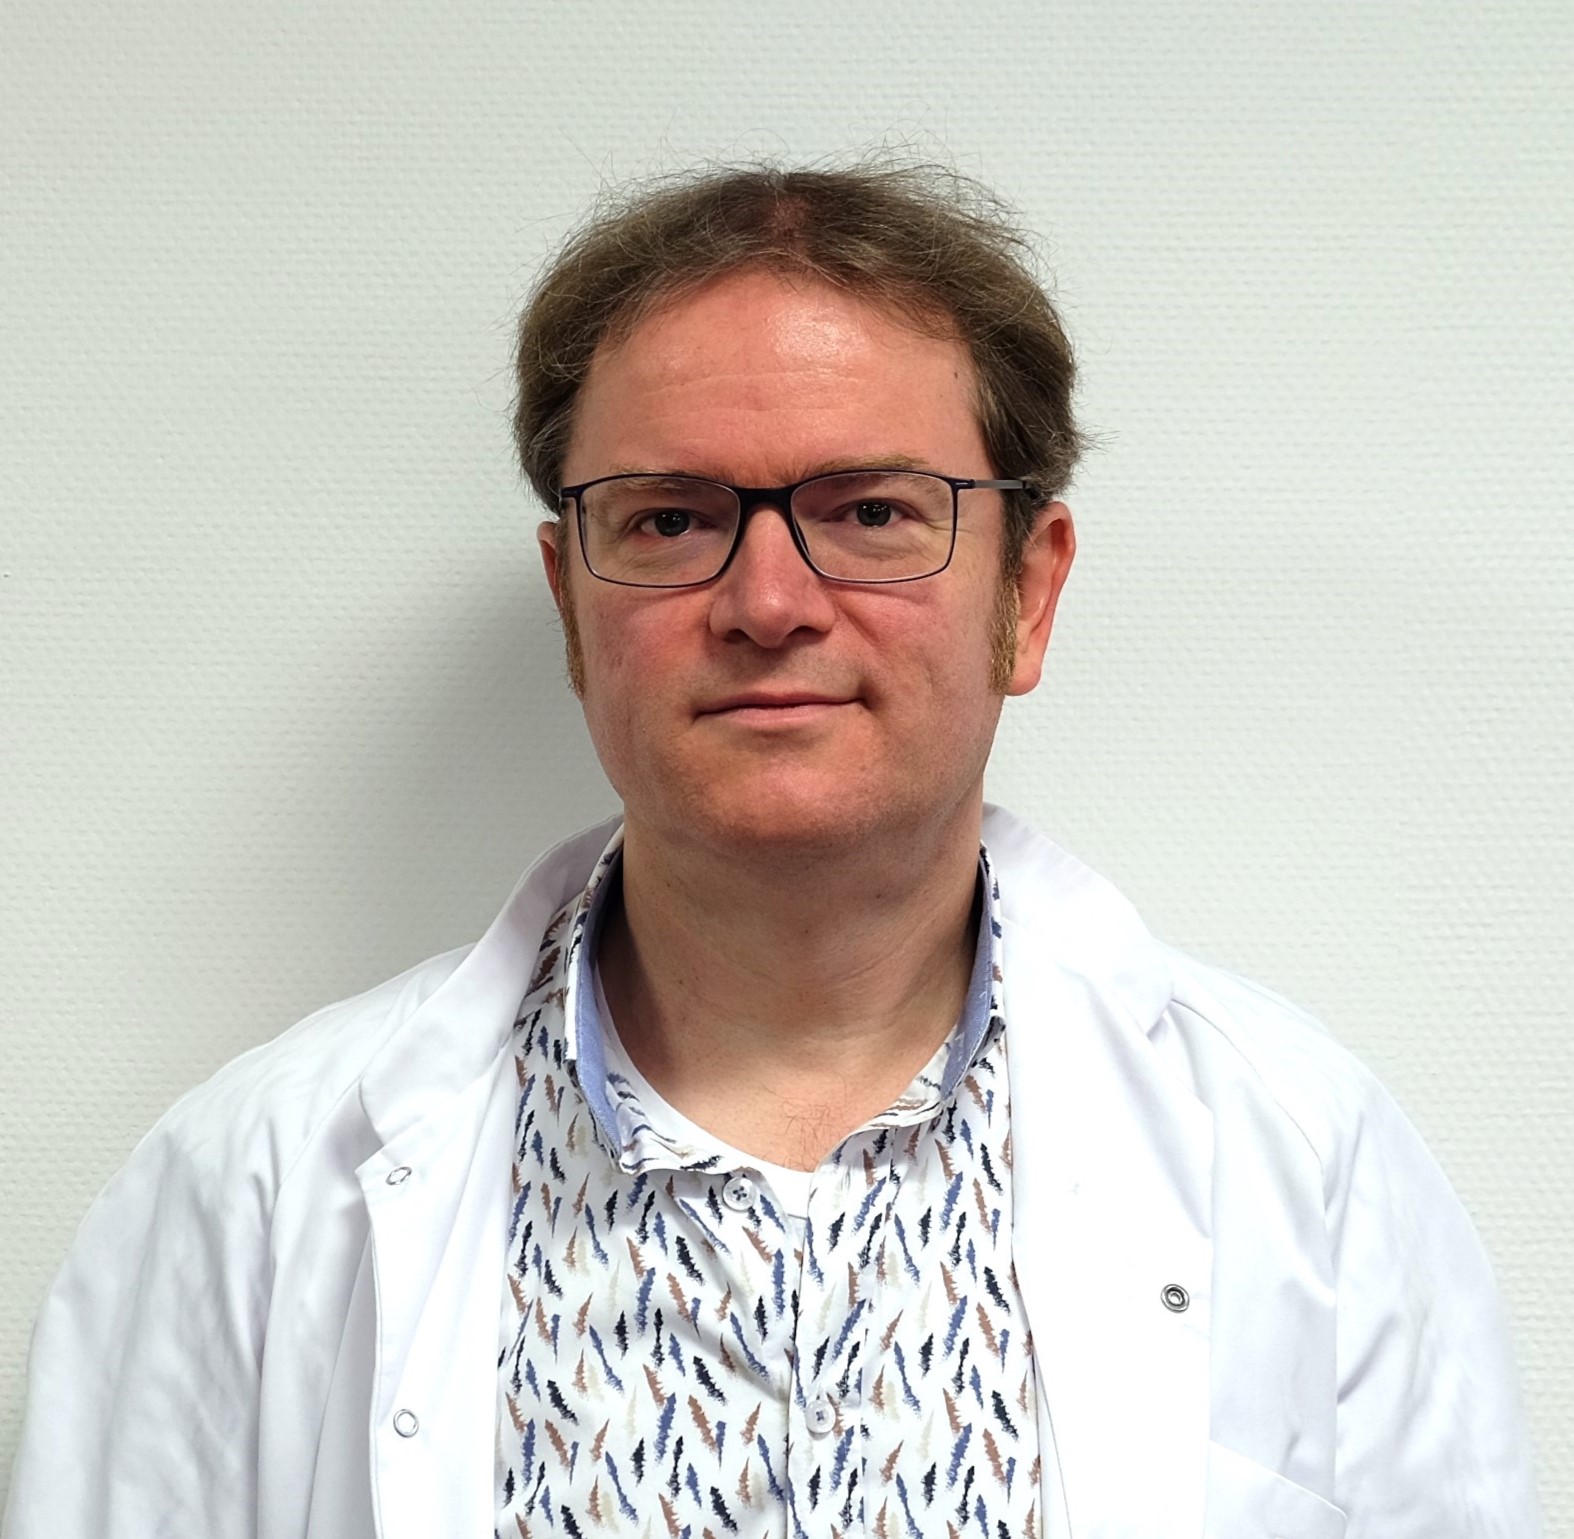 Dr. Jan Simoens